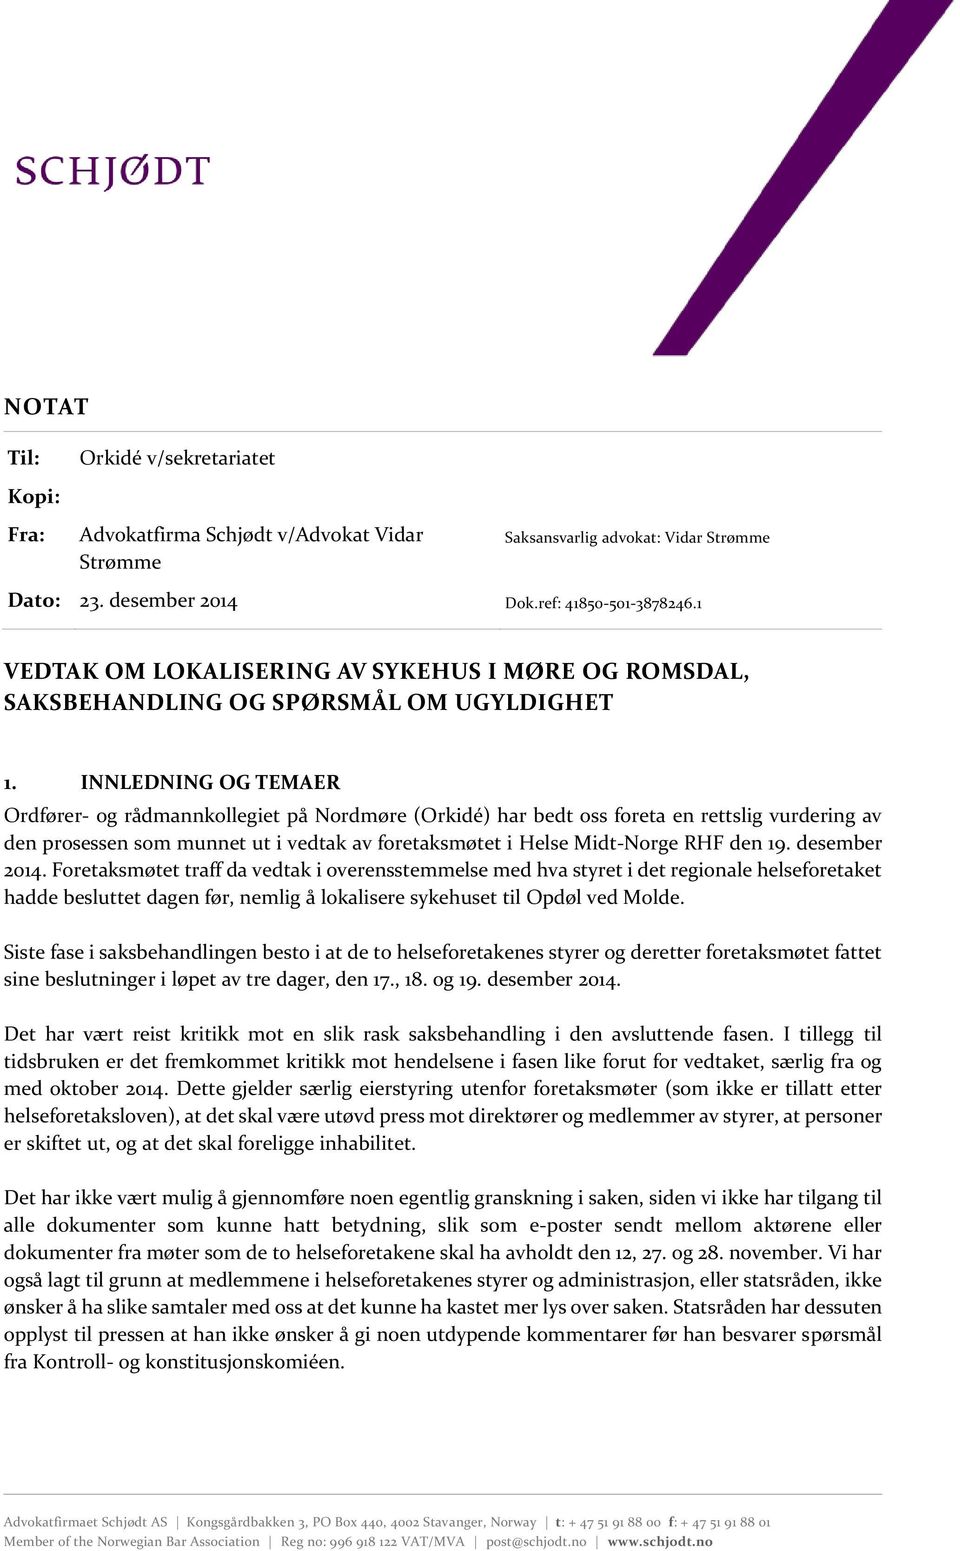 INNLEDNING OG TEMAER Ordfører- og rådmannkollegiet på Nordmøre (Orkidé) har bedt oss foreta en rettslig vurdering av den prosessen som munnet ut i vedtak av foretaksmøtet i Helse Midt-Norge RHF den